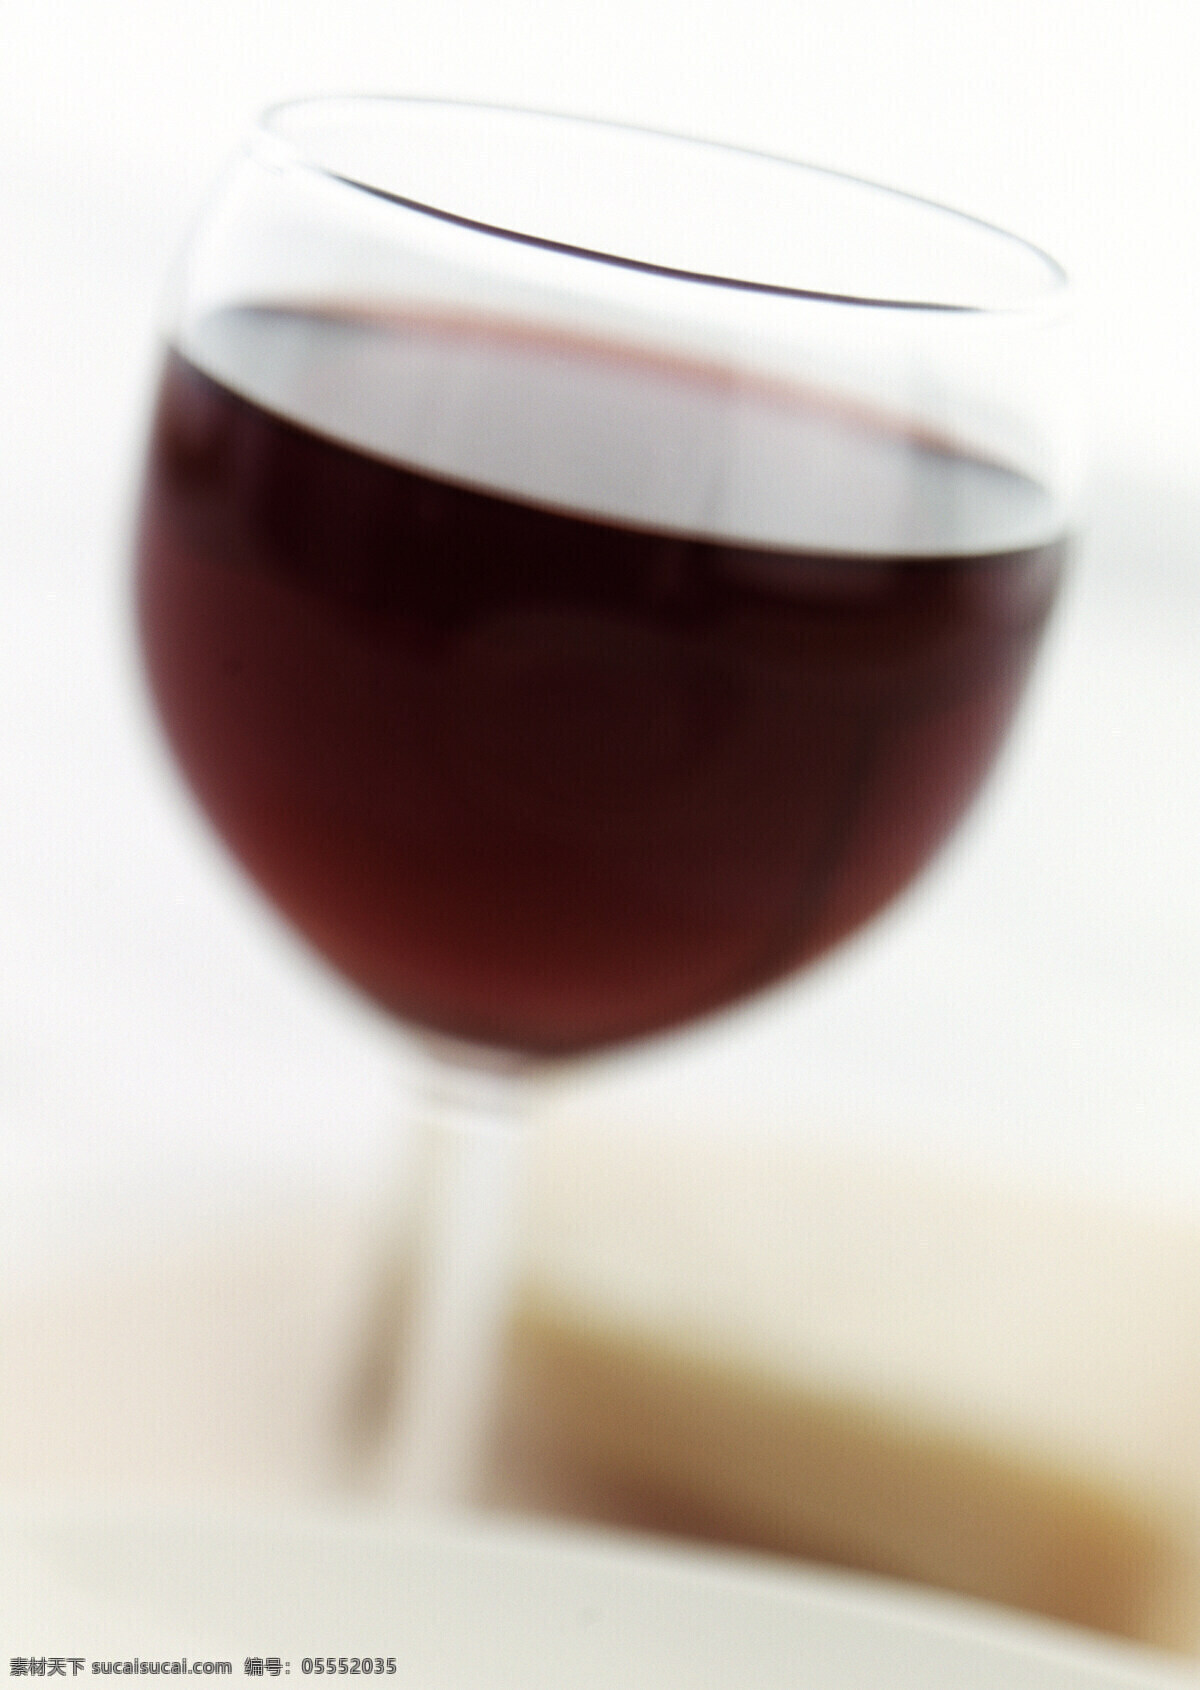 葡萄酒 红酒 酒水饮料 美酒 酒杯 玻璃杯 高脚杯 酒类图片 餐饮美食